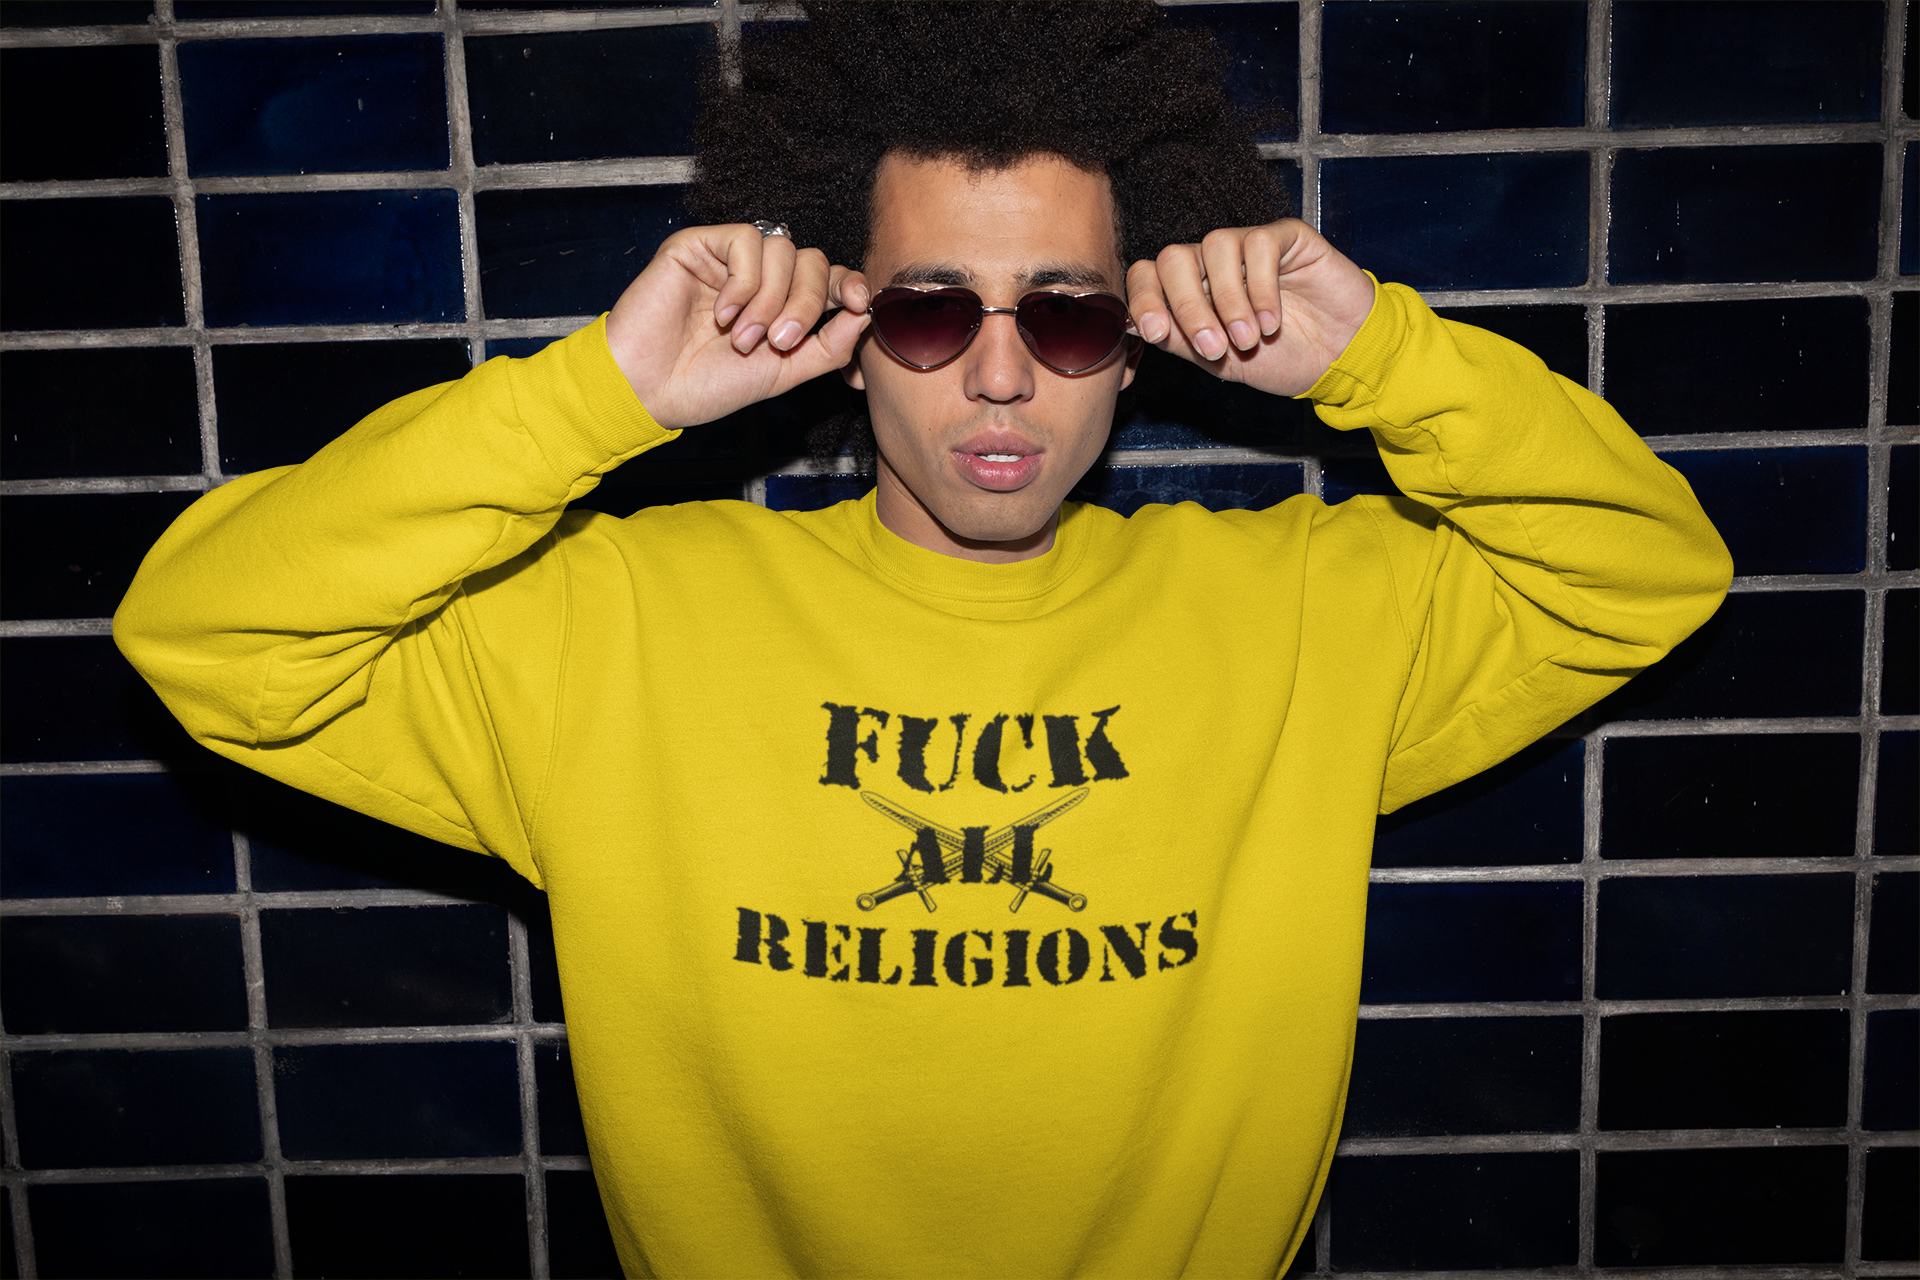 Antireligion Sweatshirt, Fuck All Religions, Ingen religion i vårt samhälle